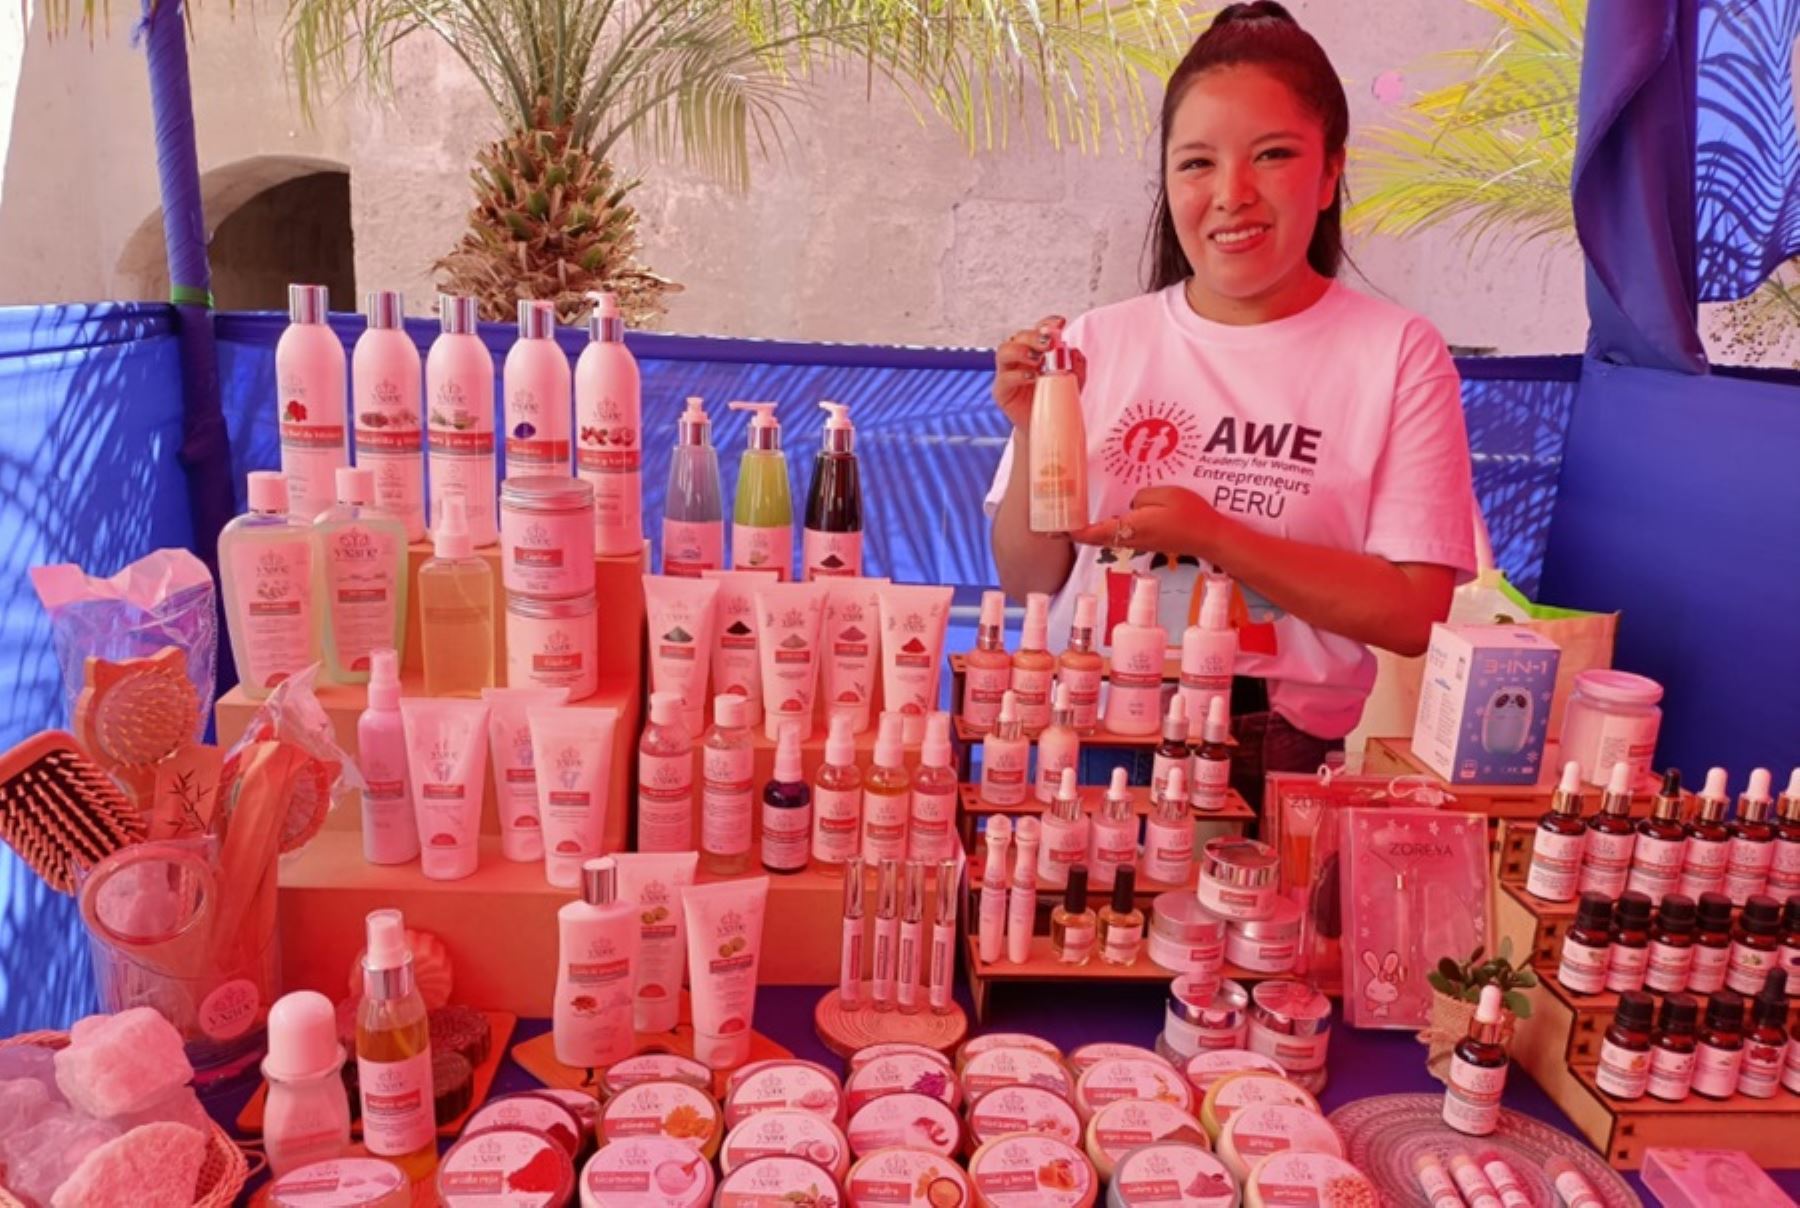 La Feria de Emprendedoras AWE-Americana Space se desarrolla en Arequipa como parte de APEC Ciudadano, evento que se realiza en el marco de la Segunda Reunión de Altos Funcionarios del Foro de Cooperación Económica-Asia Pacífico (APEC), que se reúne en la ciudad blanca.